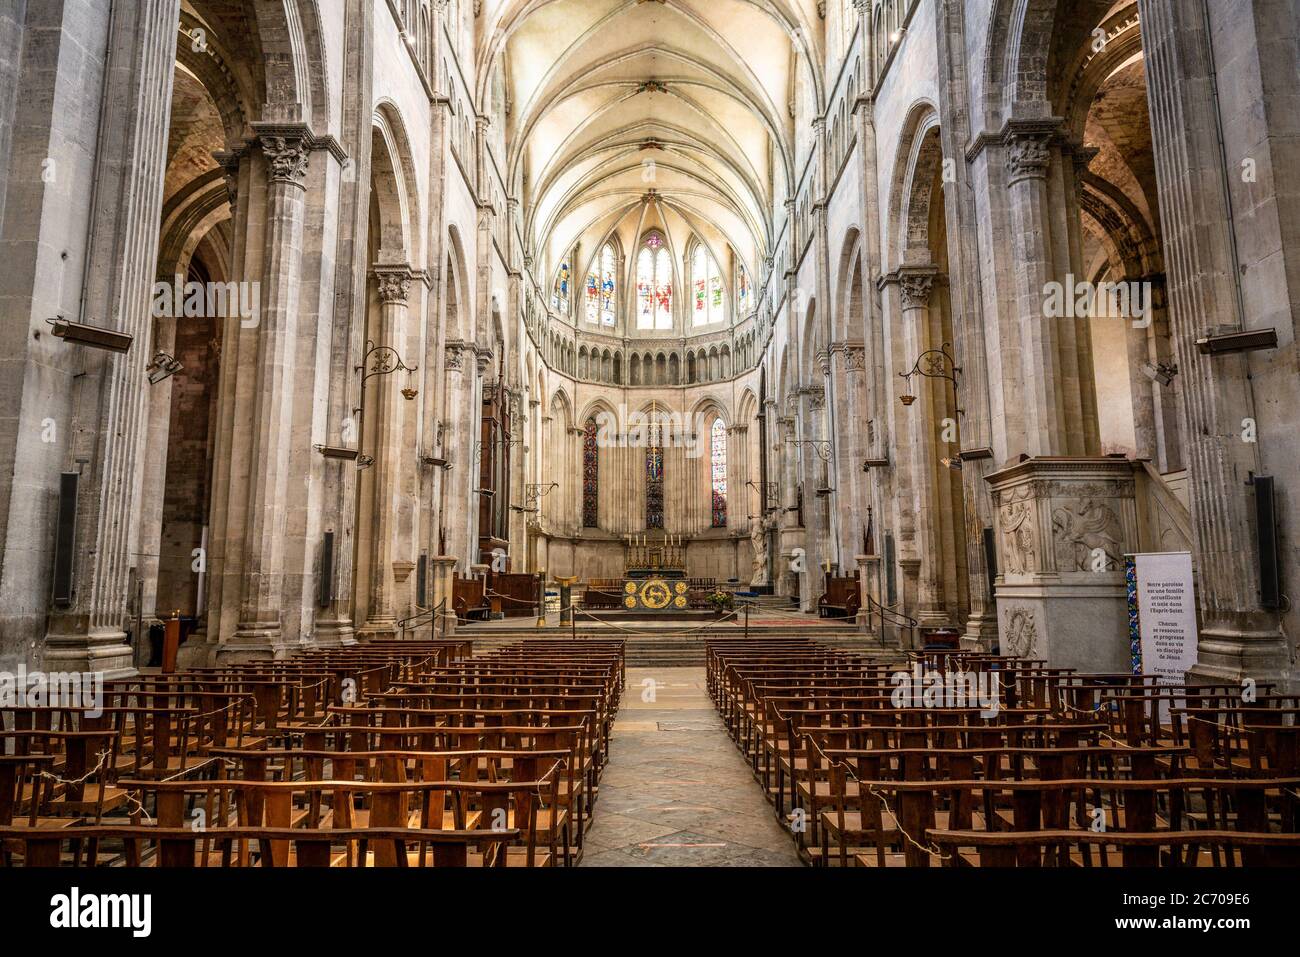 Vienne France , 11 juillet 2020 : vue intérieure de la cathédrale Saint-Maurice de Vienne Isère France Banque D'Images